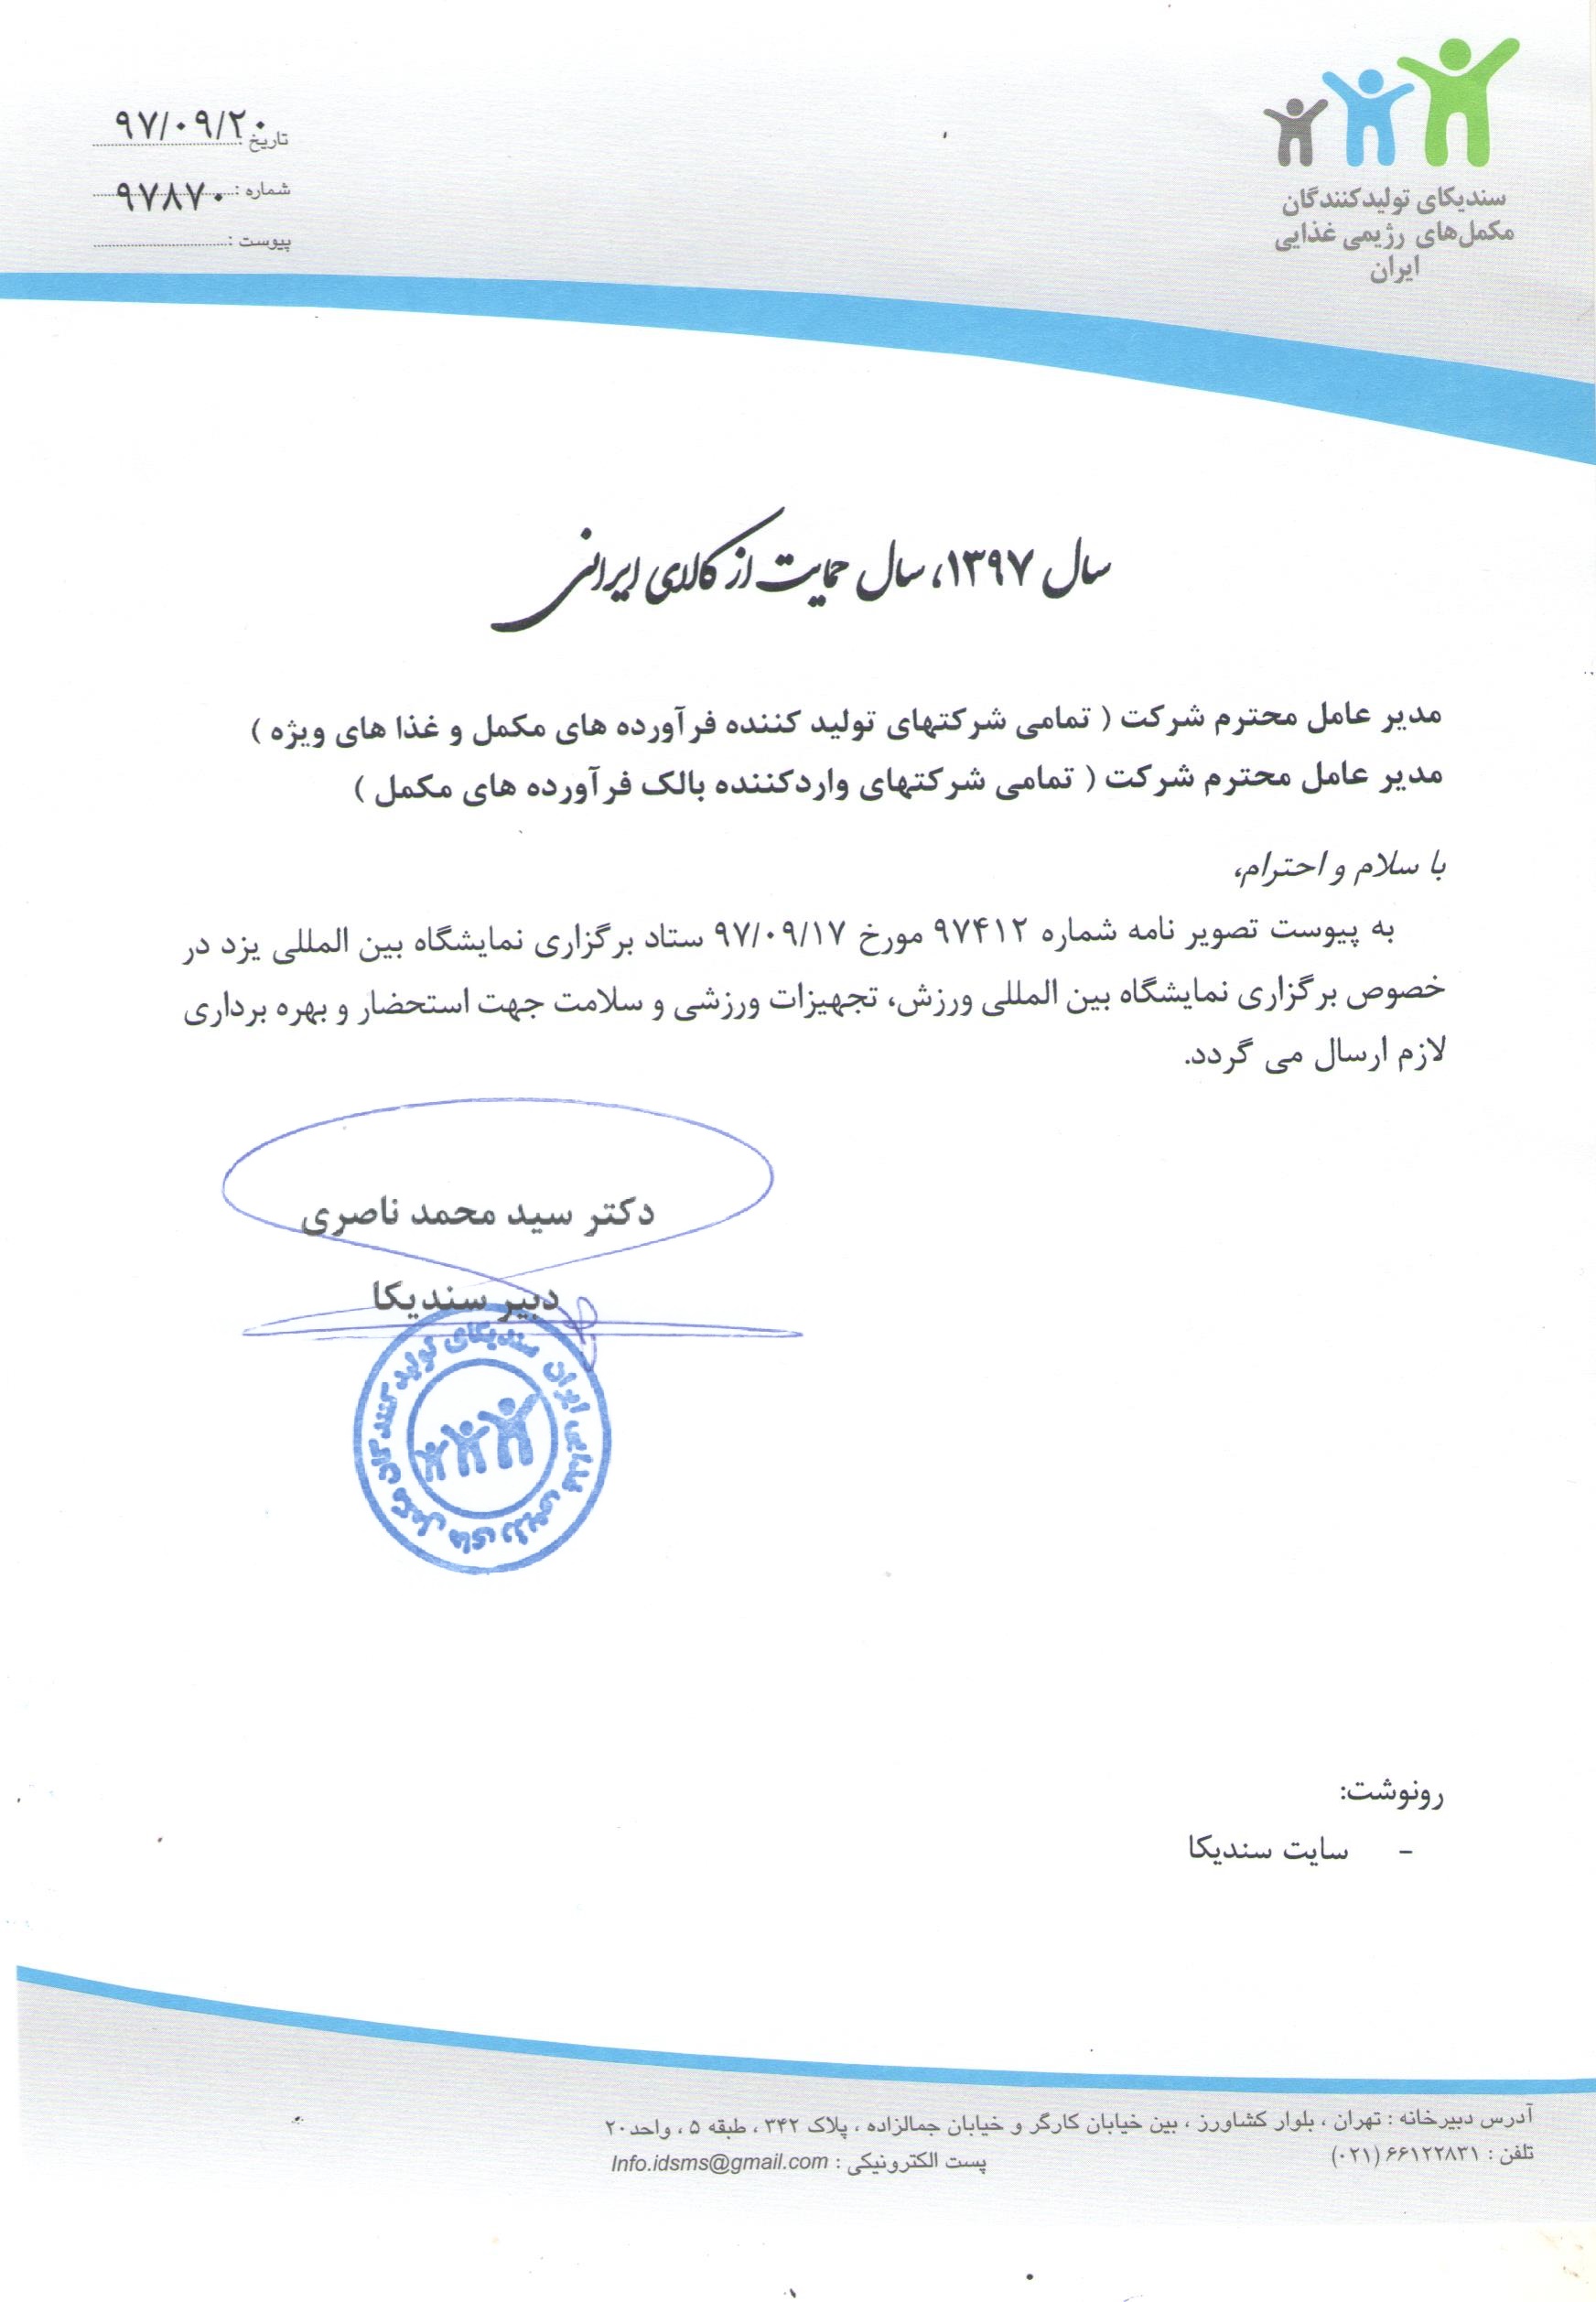 نامه در خصوص برگزاری نمایشگاه بین المللی یزد